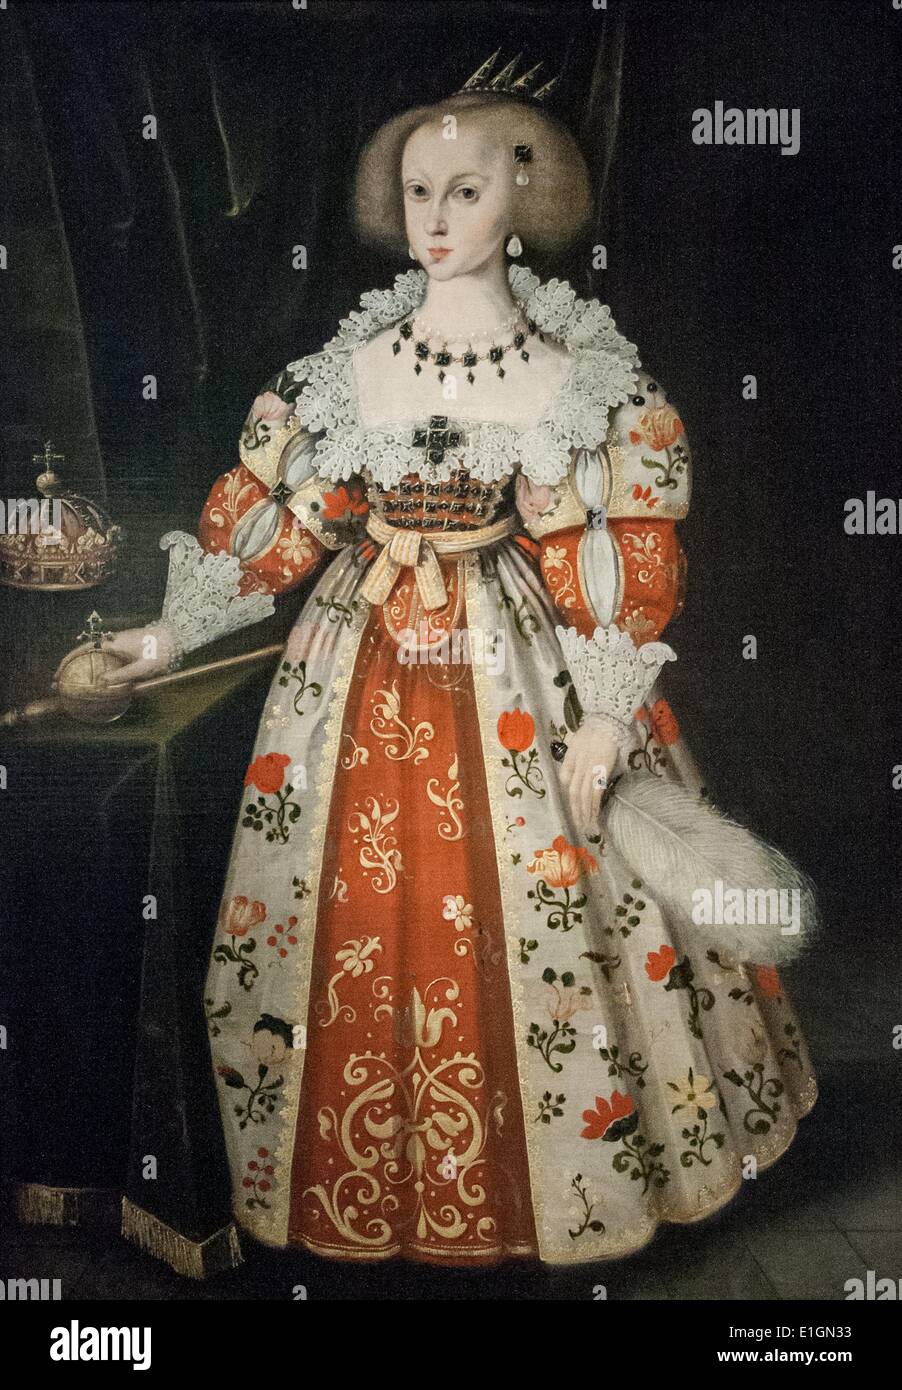 L'École de Jacob Heinrich Elbfas (ch. 1600-1664). Portrait de la reine Christine comme un enfant. Christina (Suédois : Kristina Augusta ; 18 décembre [O.S. 8 décembre] 1626 - 19 avril 1689), plus tard a adopté le nom de Christina Alexandra, a été reine de Suède de 1633 à 1654 Banque D'Images